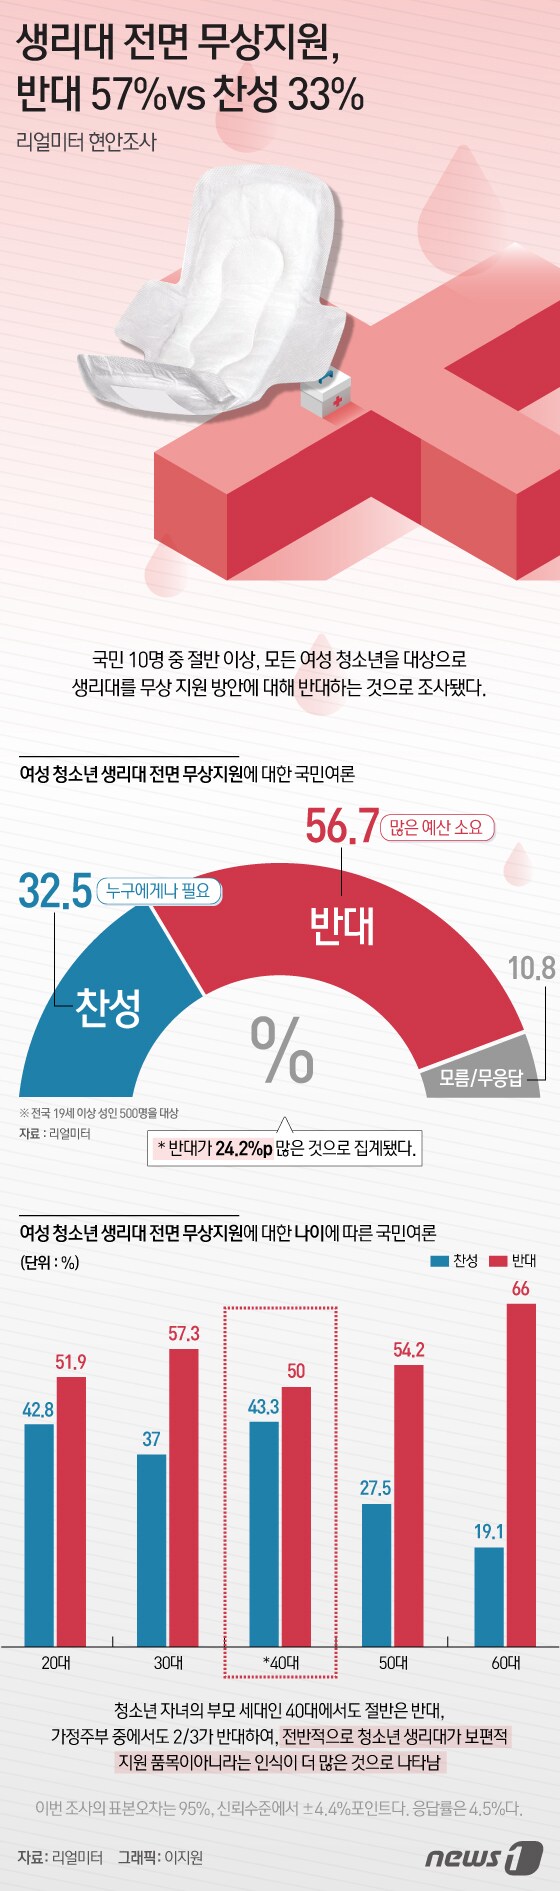 [그래픽뉴스] 생리대 전면 무상지원 반대 57% vs 찬성 33%